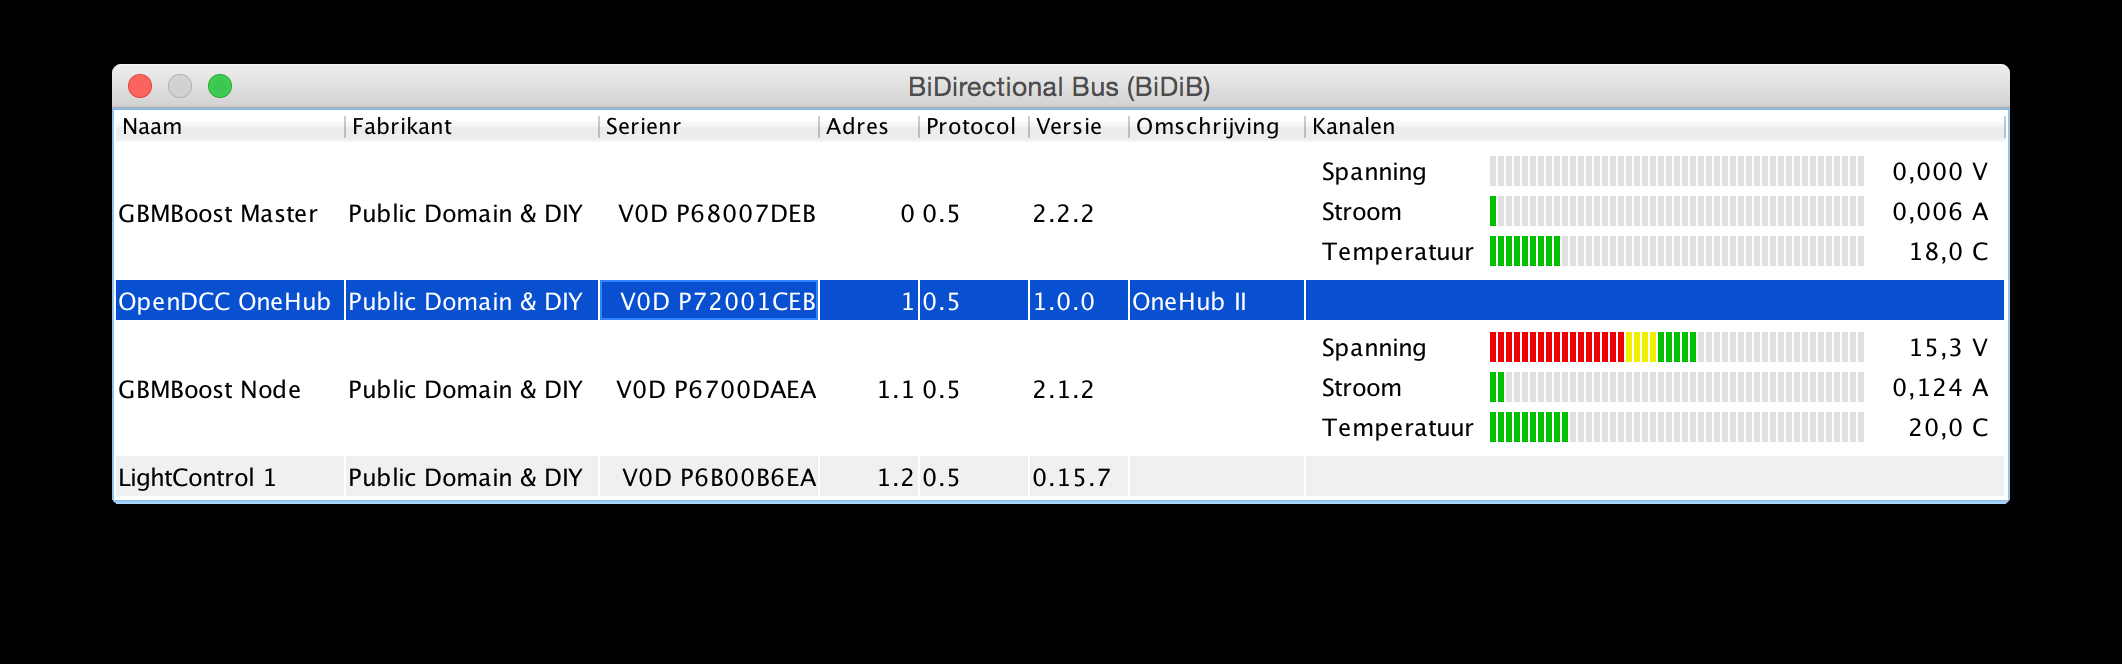 Het grote verschil tussen BiDiB en andere interfaces is dat BiDiB zoveel mogelijk probeert adressen te vermijden.